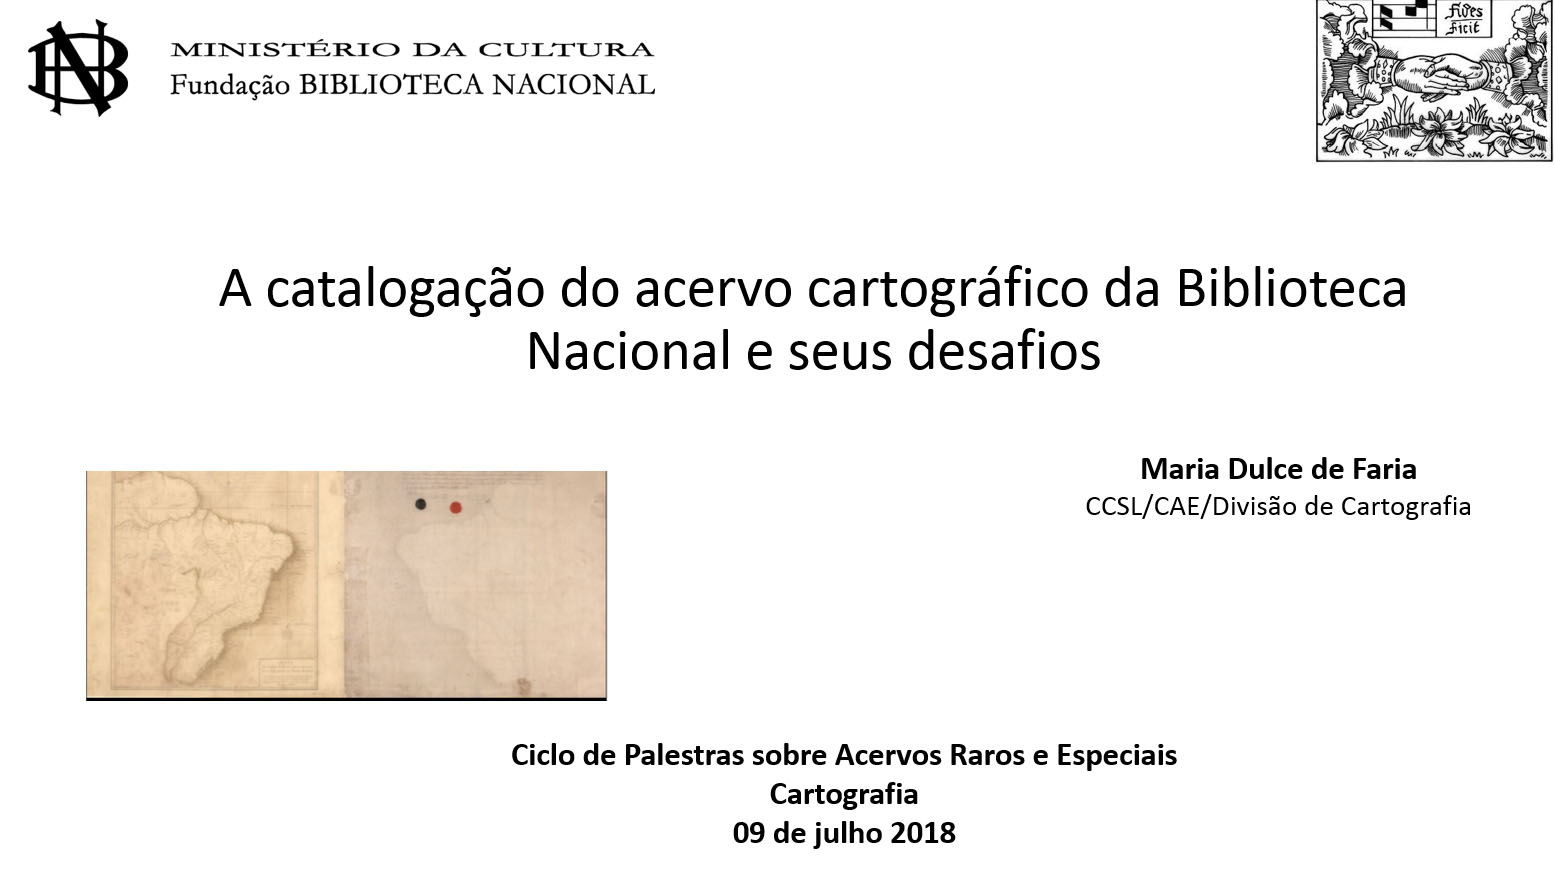 Capa do documento A catalogação do acervo cartográfico da Biblioteca Nacional e seus desafios.